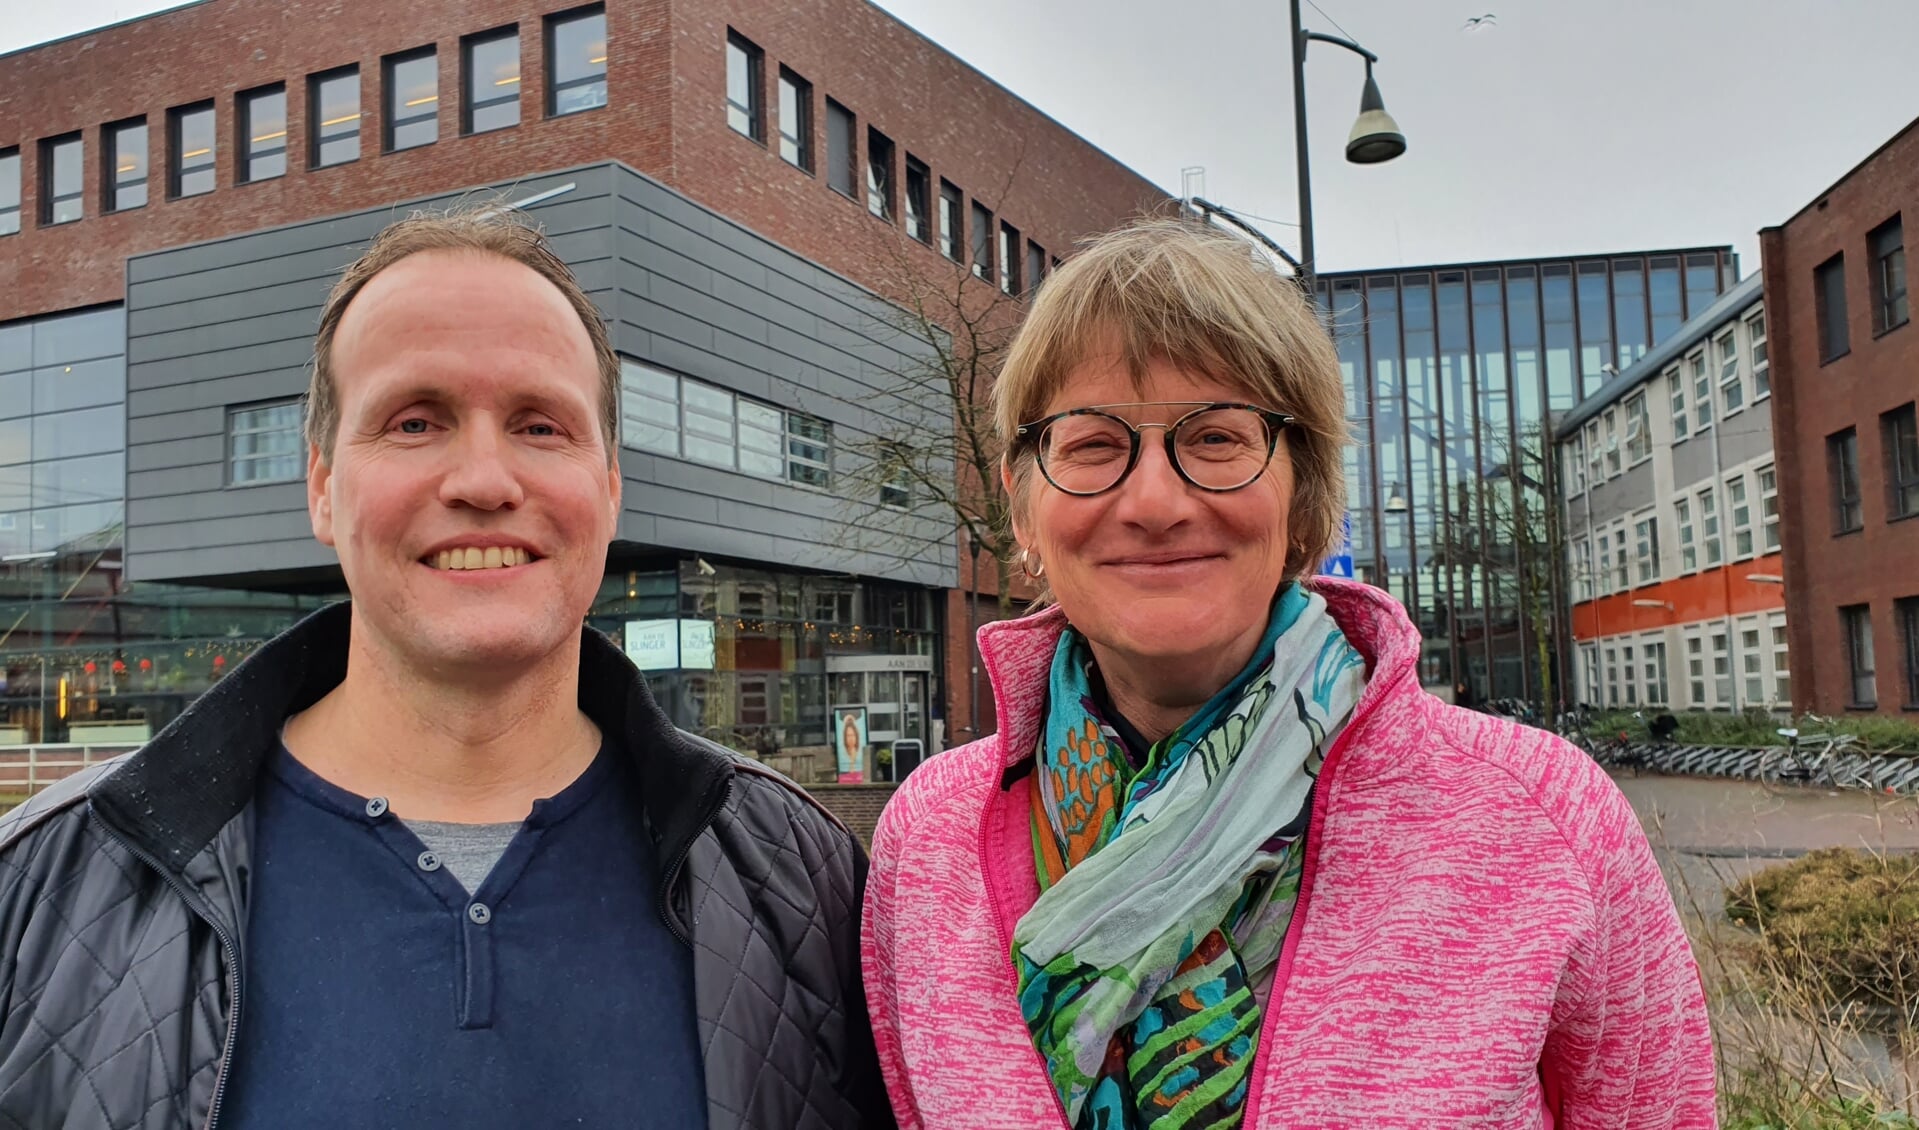 Danny Keff en Anja Tekelenburg zijn de nieuwe dorpsdichters van Houten en maken zich sterk voor meer ruimte voor poëzie in Houten